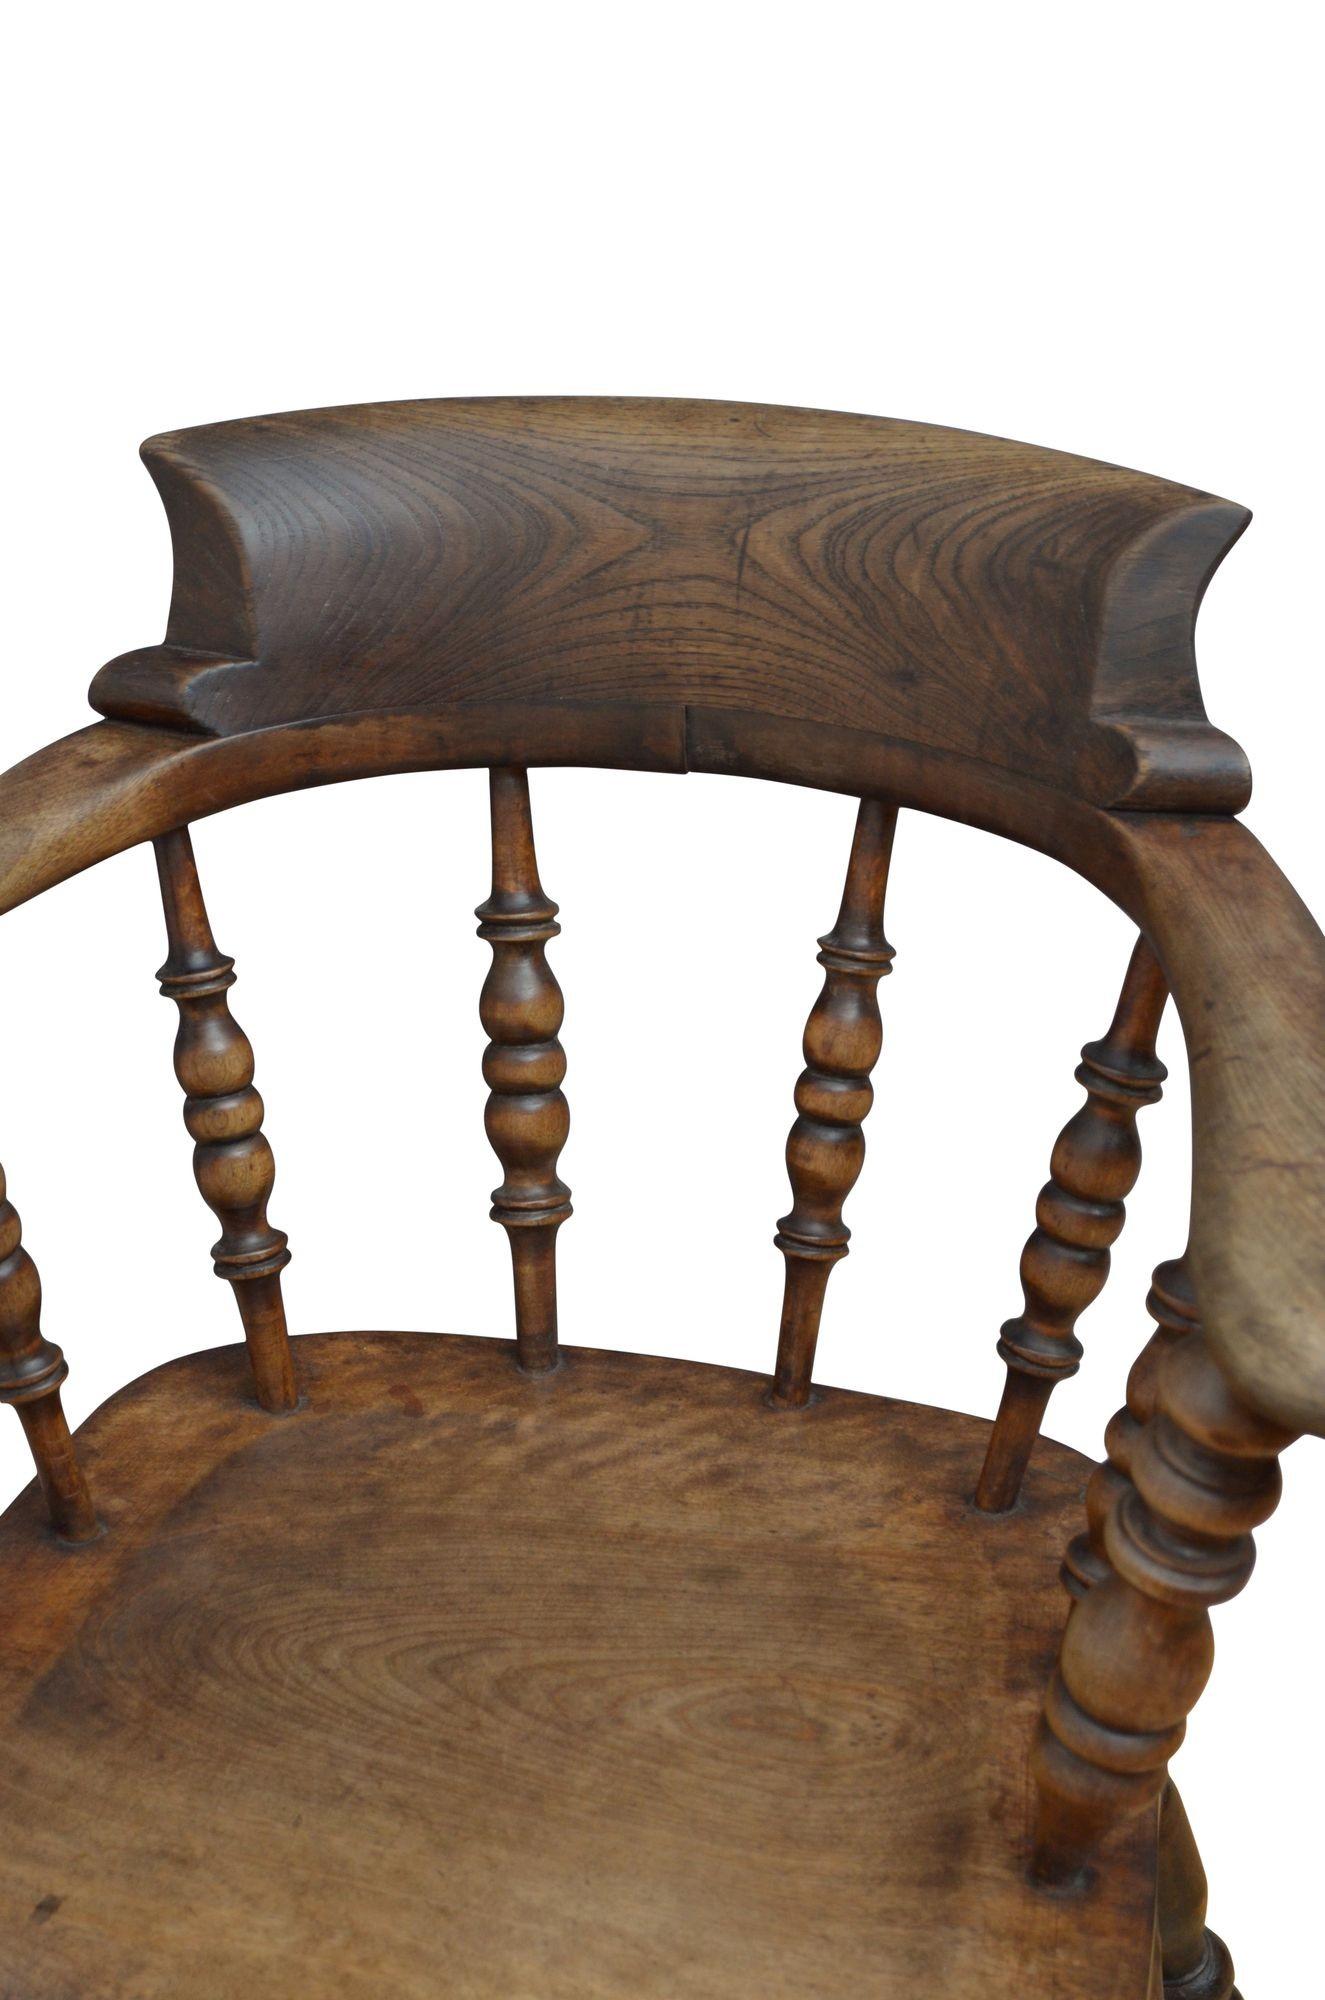 0239 Spätviktorianischer Sessel aus Esche und Ulme mit geformter oberer Schiene, die sich auf gedrehten Stützen und einem großzügigen Sitz abstützt, der auf massiven gedrechselten Beinen steht, die durch doppelte Bahren verbunden sind. Dieser Stuhl